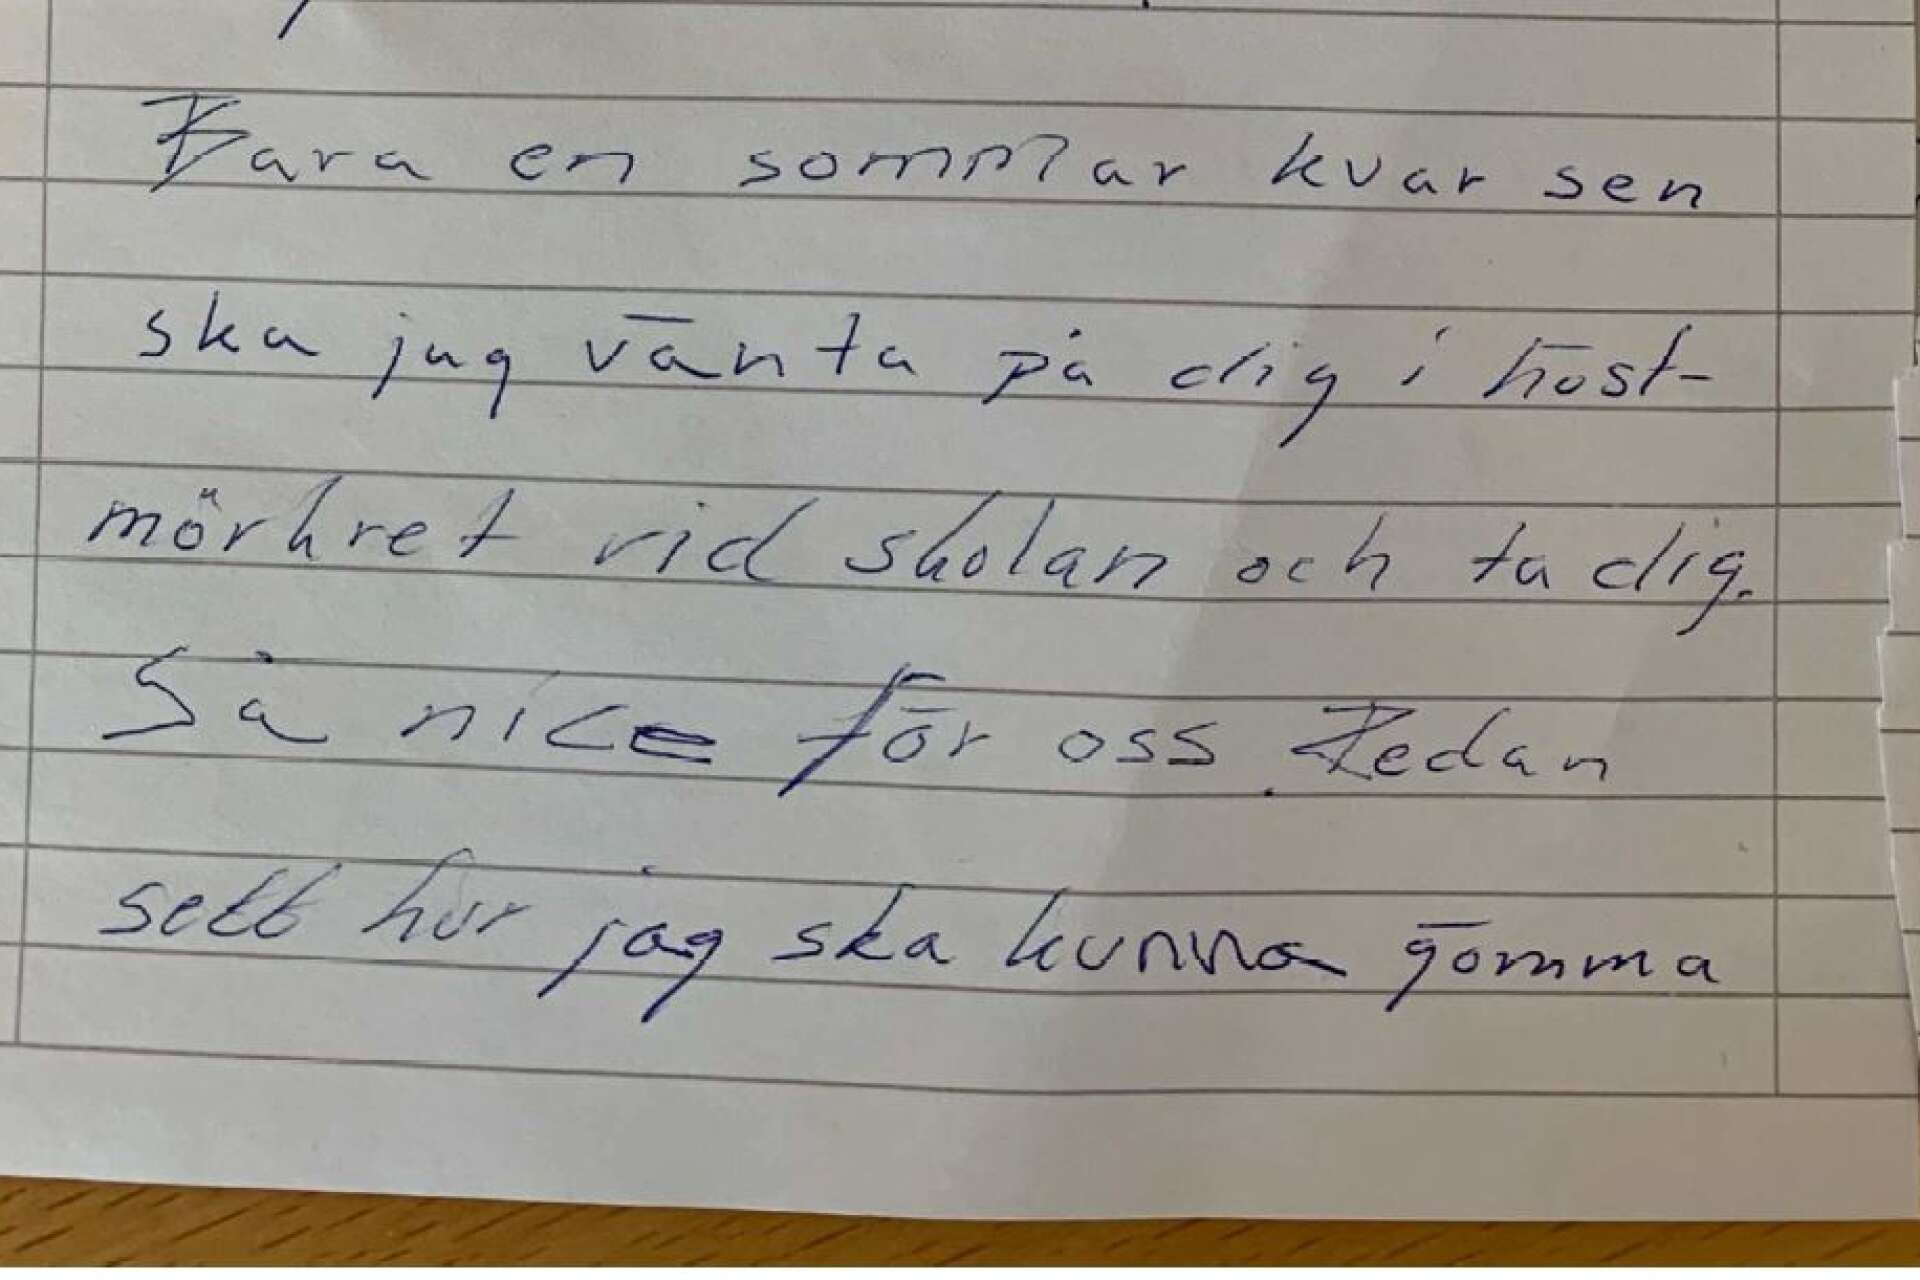 När den legitimerade läraren fått hans jobb på en skola i Kristinehamn försökte lärarvikarien skrämma i väg henne med anonyma brev och hot om våldtäkt.